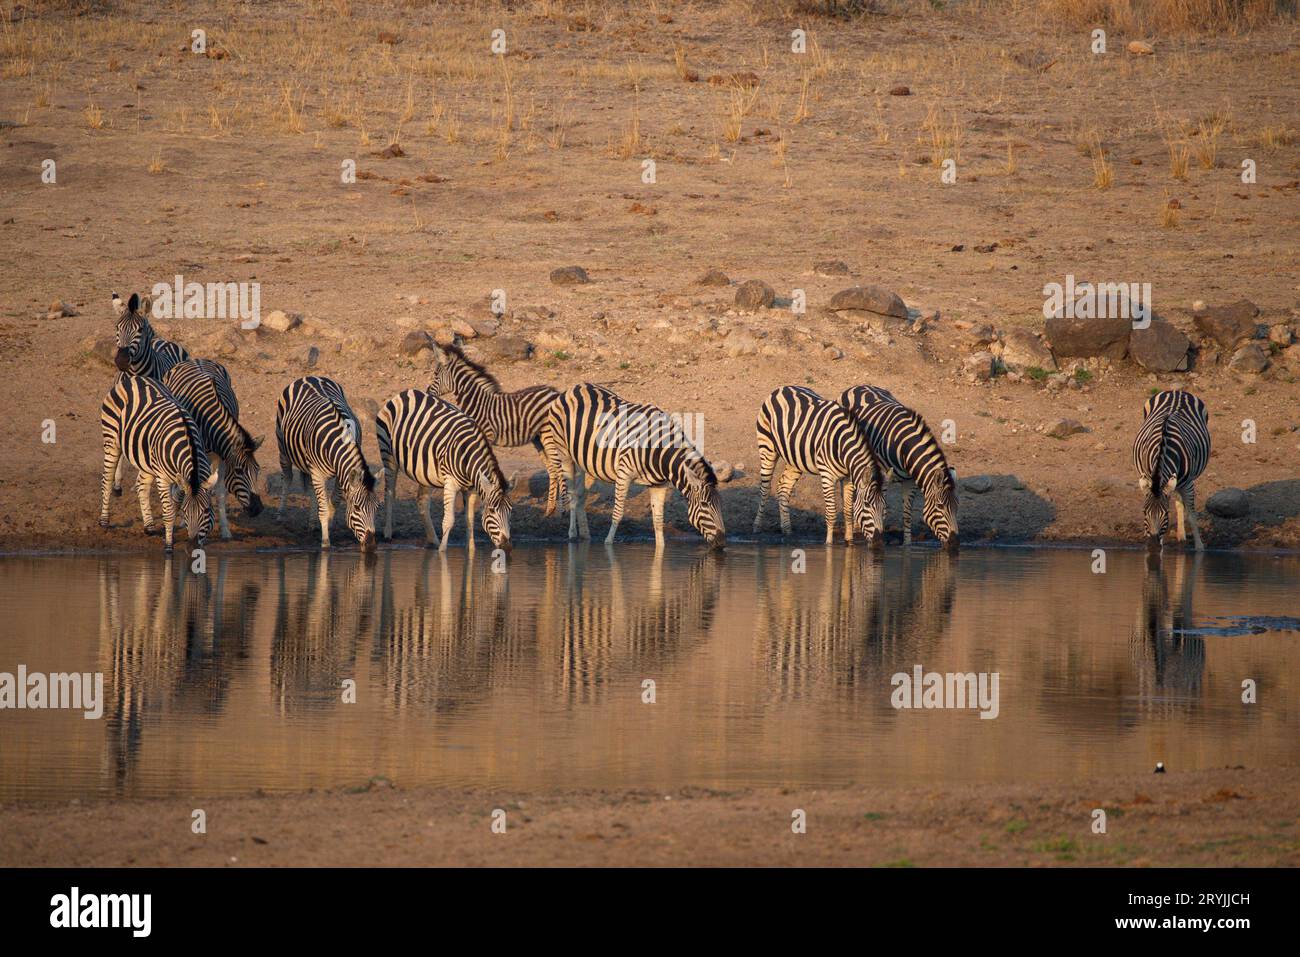 Zebras drinking water in a pod. Cebras bebiendo agua en una charca Stock Photo